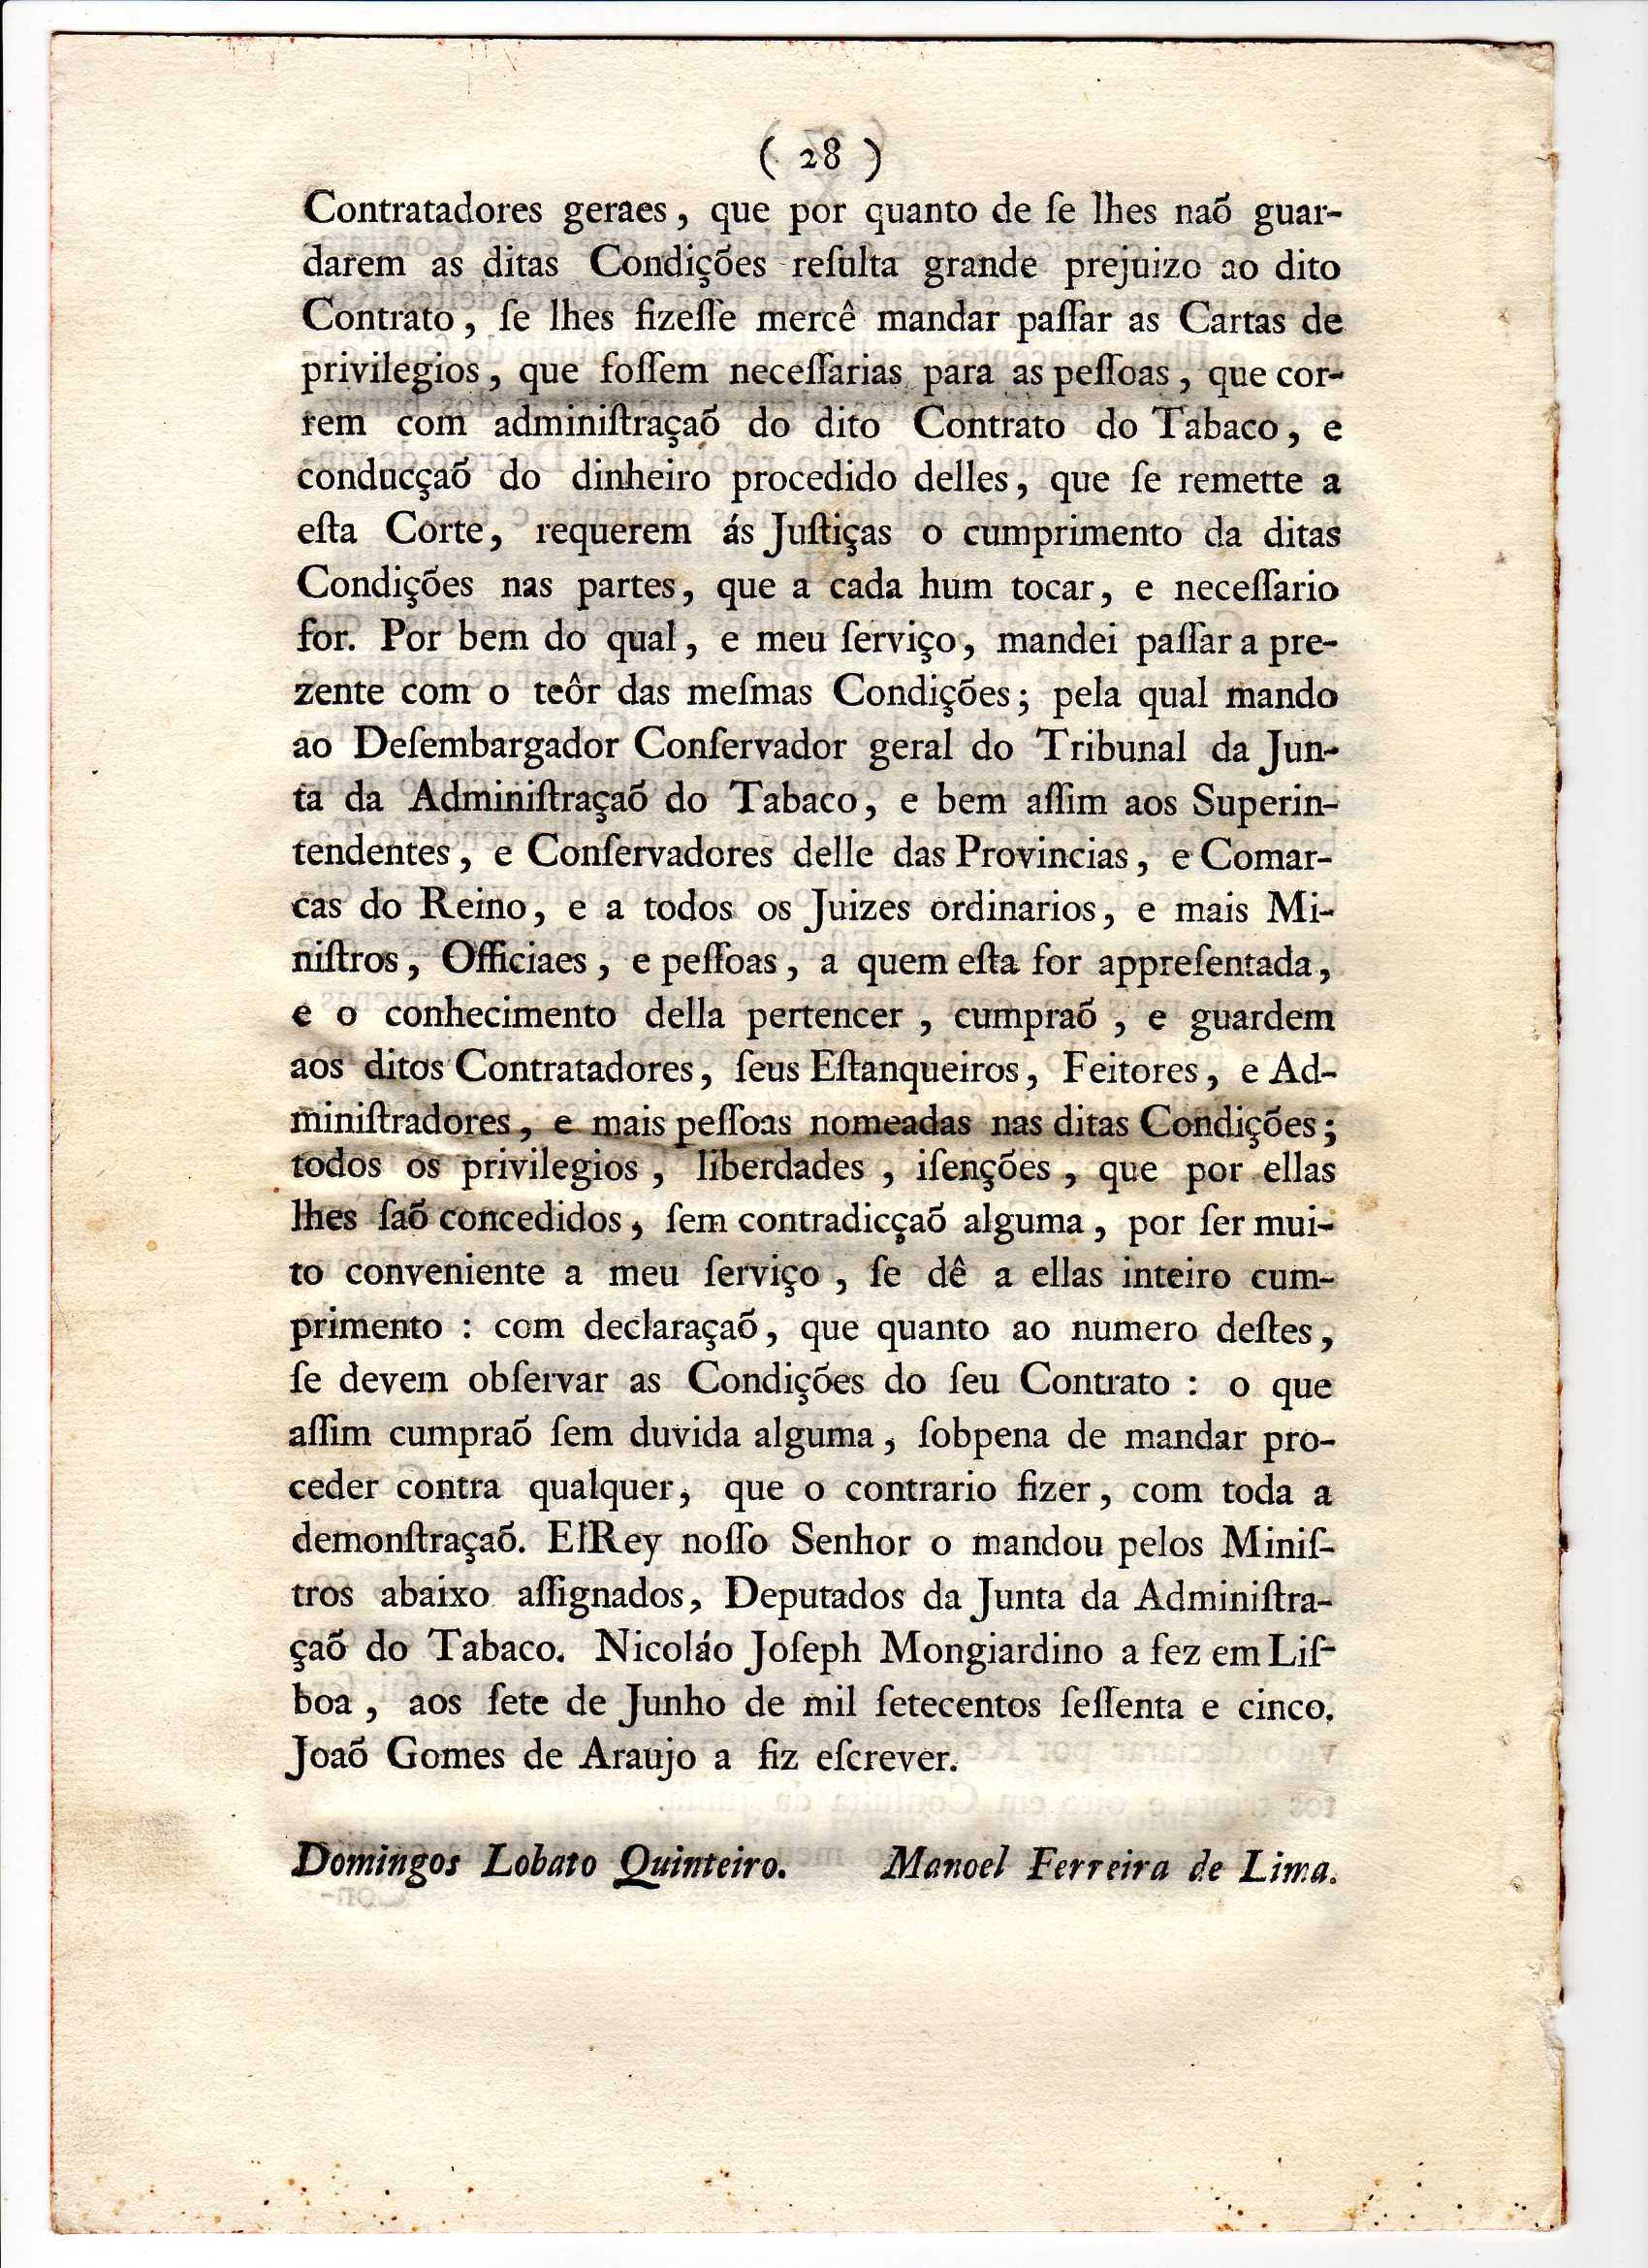 Carta dos Privilégios do Contrato Geral do Tabaco - 1765